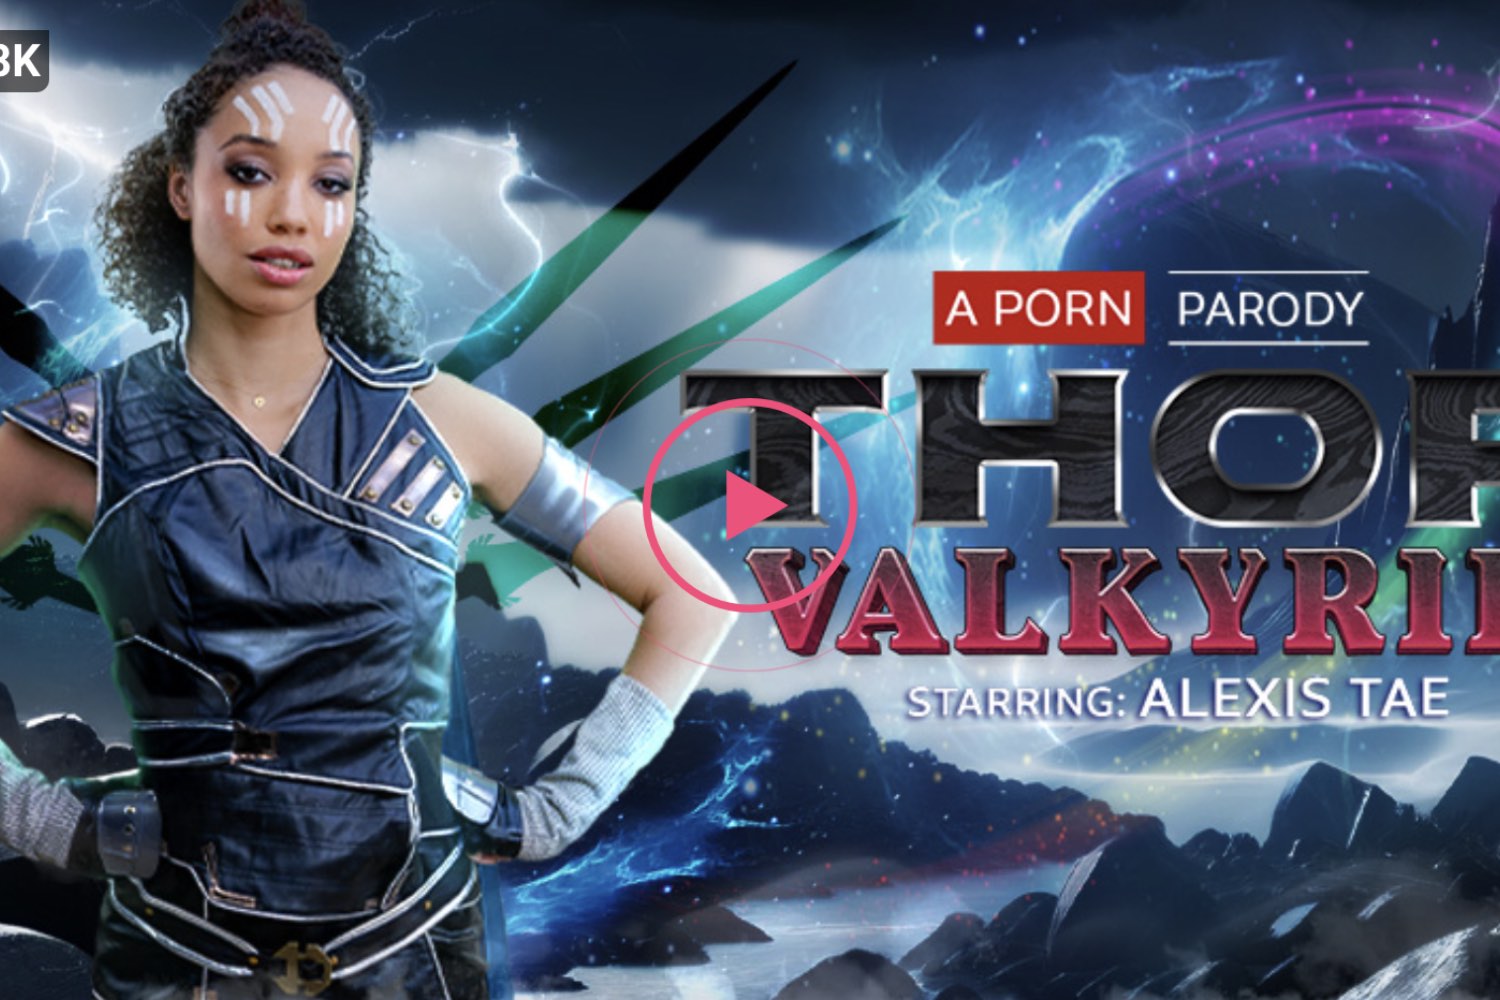 Thor: Valkyrie (A Porn Parody) - Alexis Tae Virtual Reality Porn - Alexis Tae VR Porn